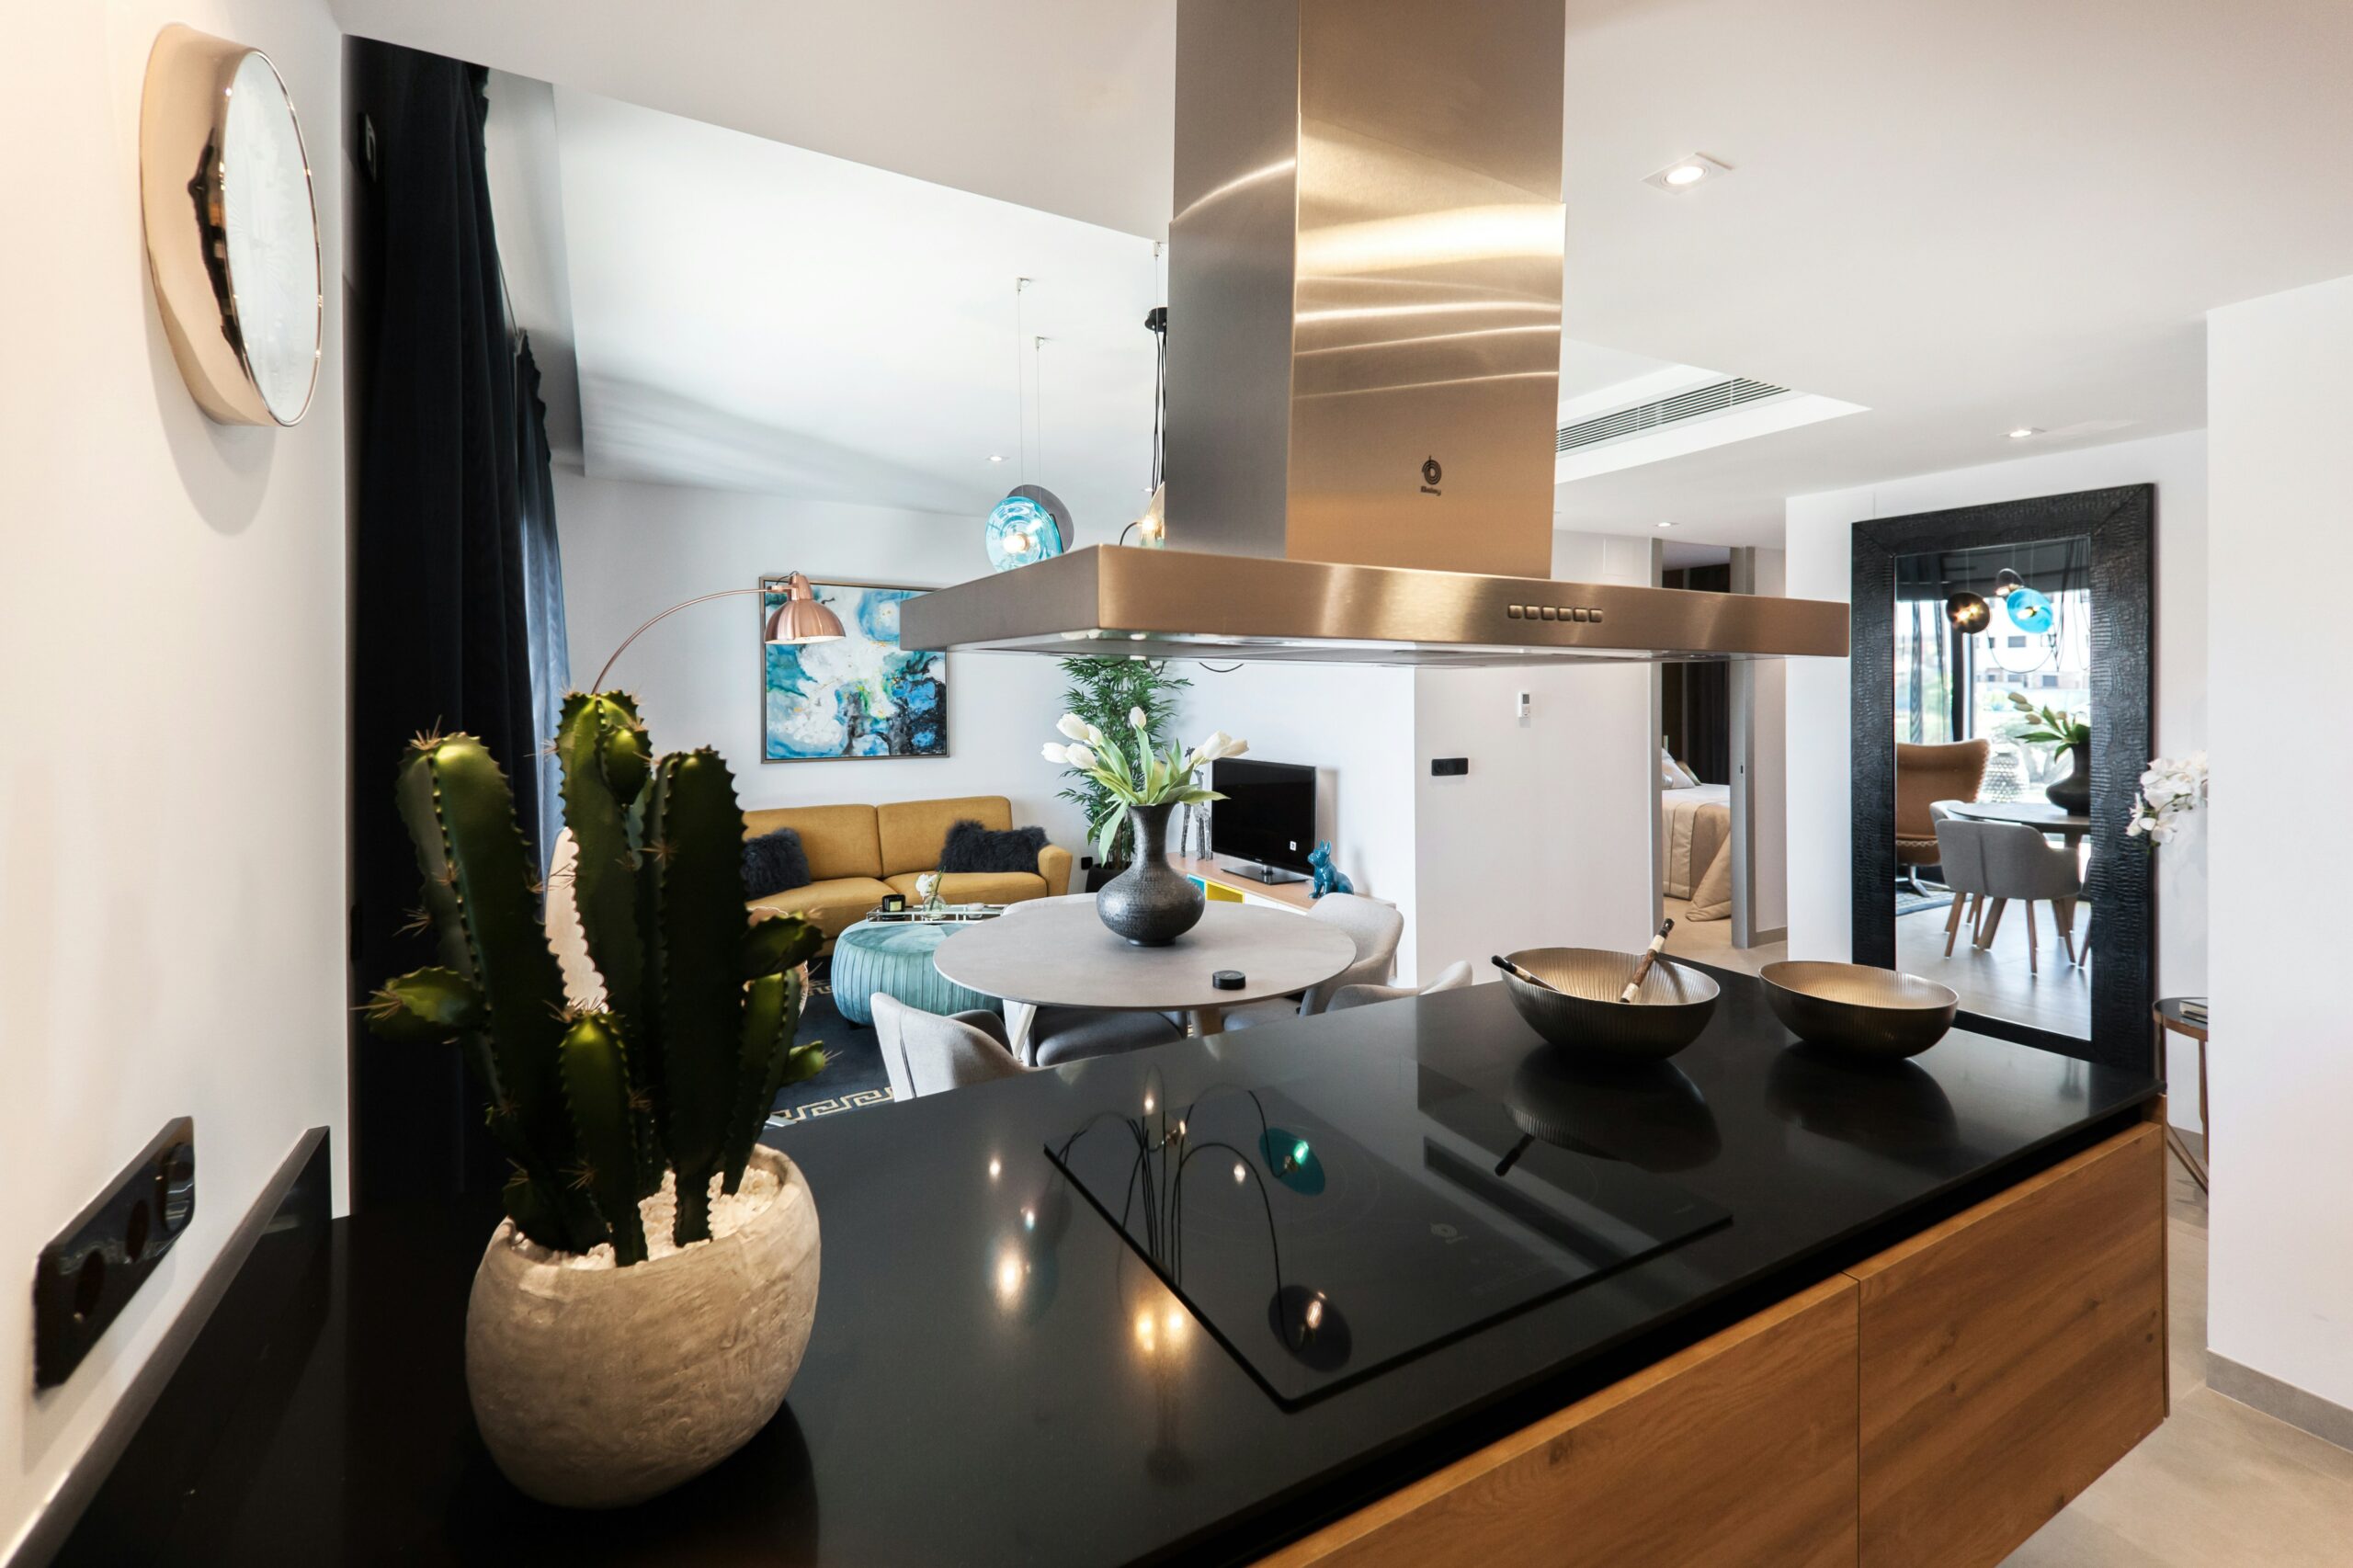 découvrez une large sélection d'éléments de cuisine pour aménager votre espace avec style et fonctionnalité.